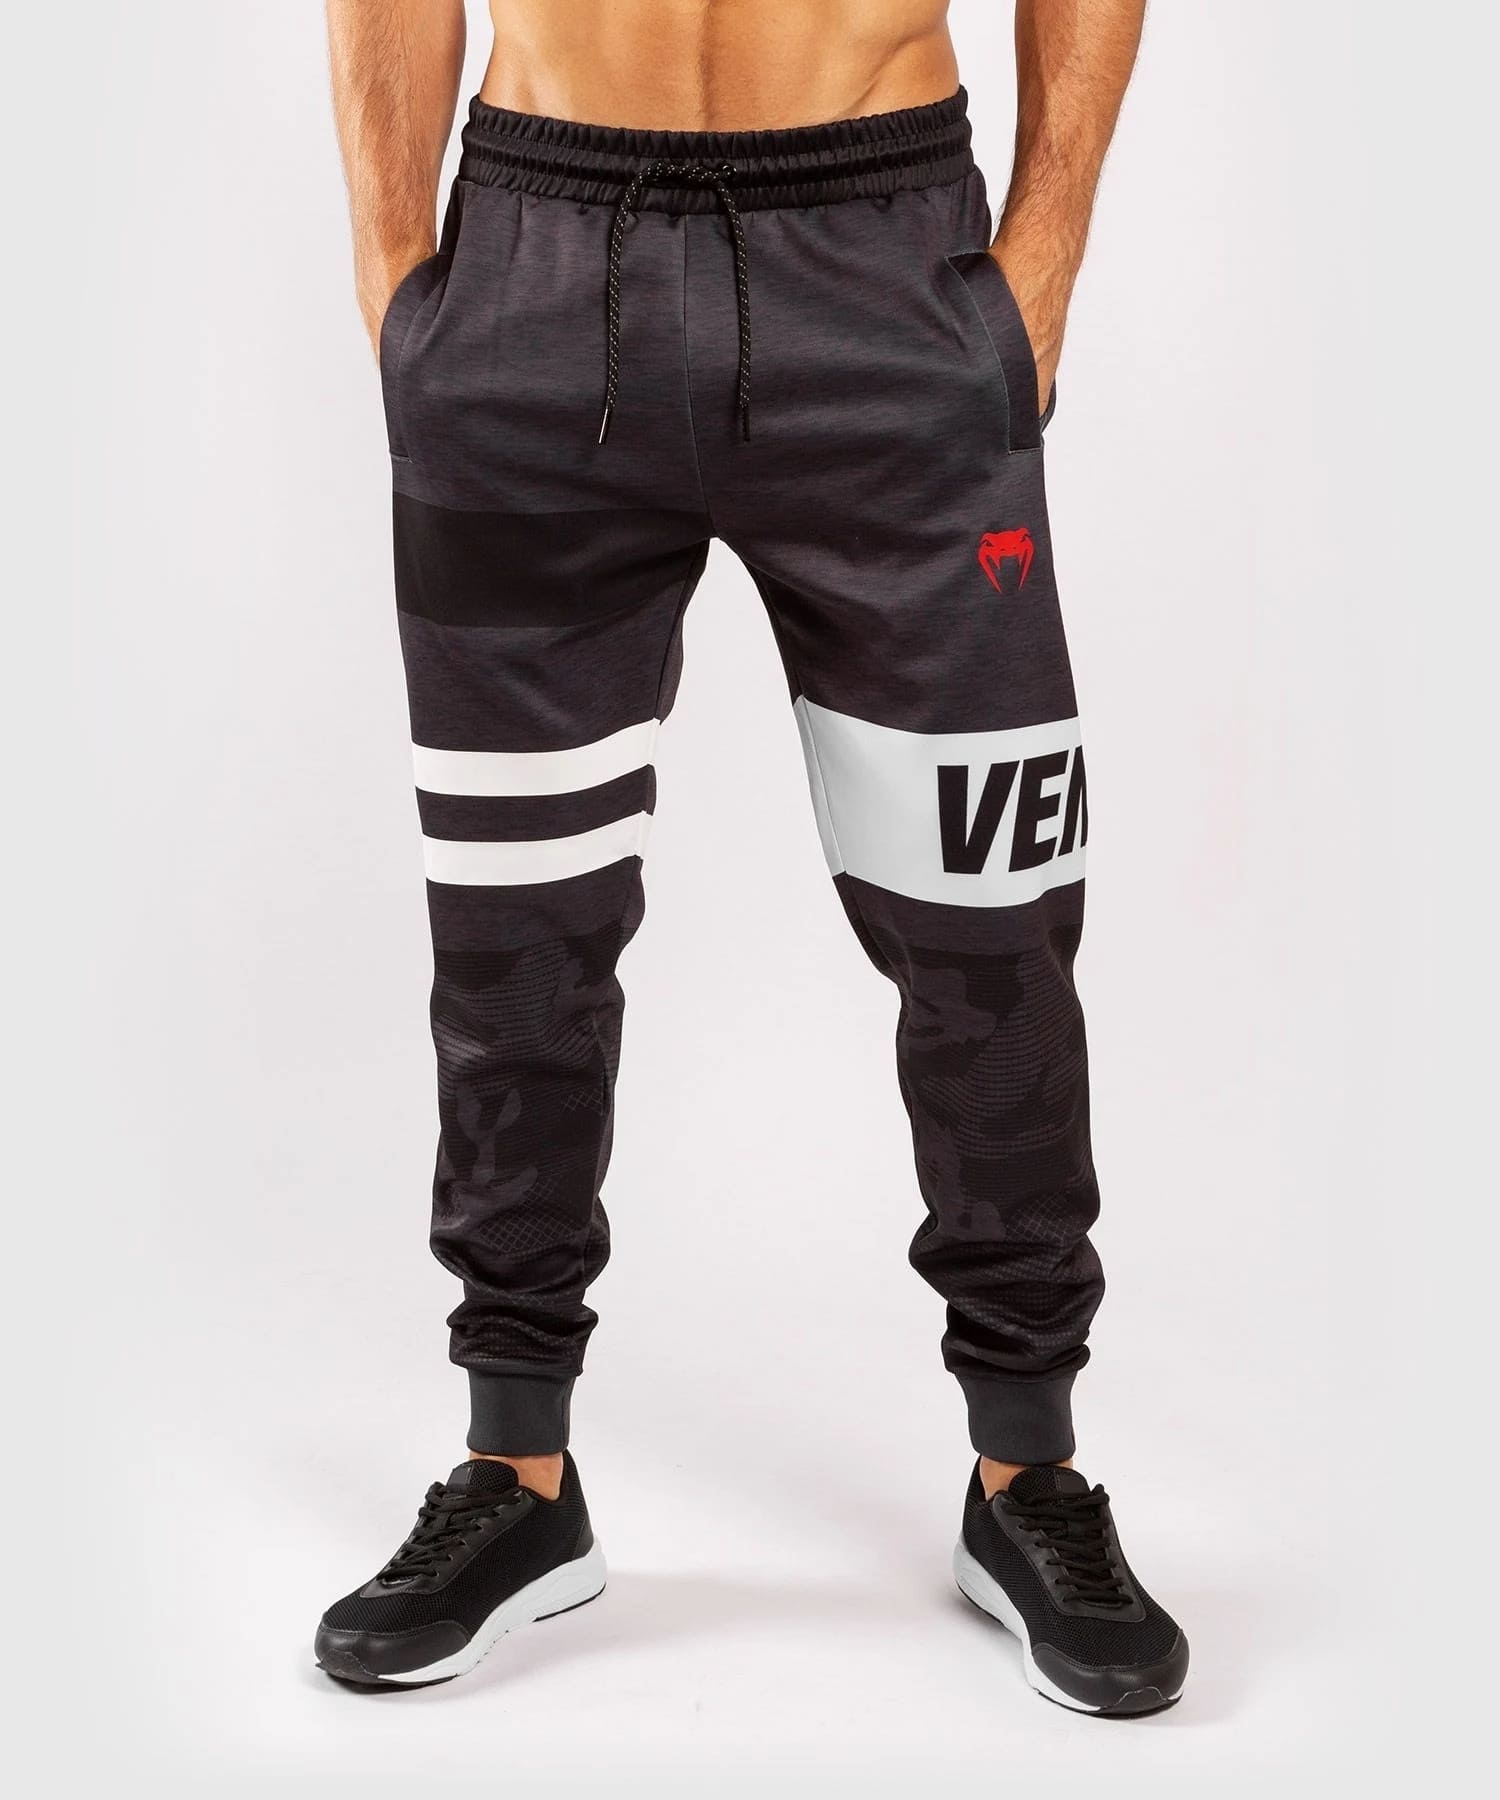 Buy Venum Jogging Pant Bandit Online - emparor Fight Shop